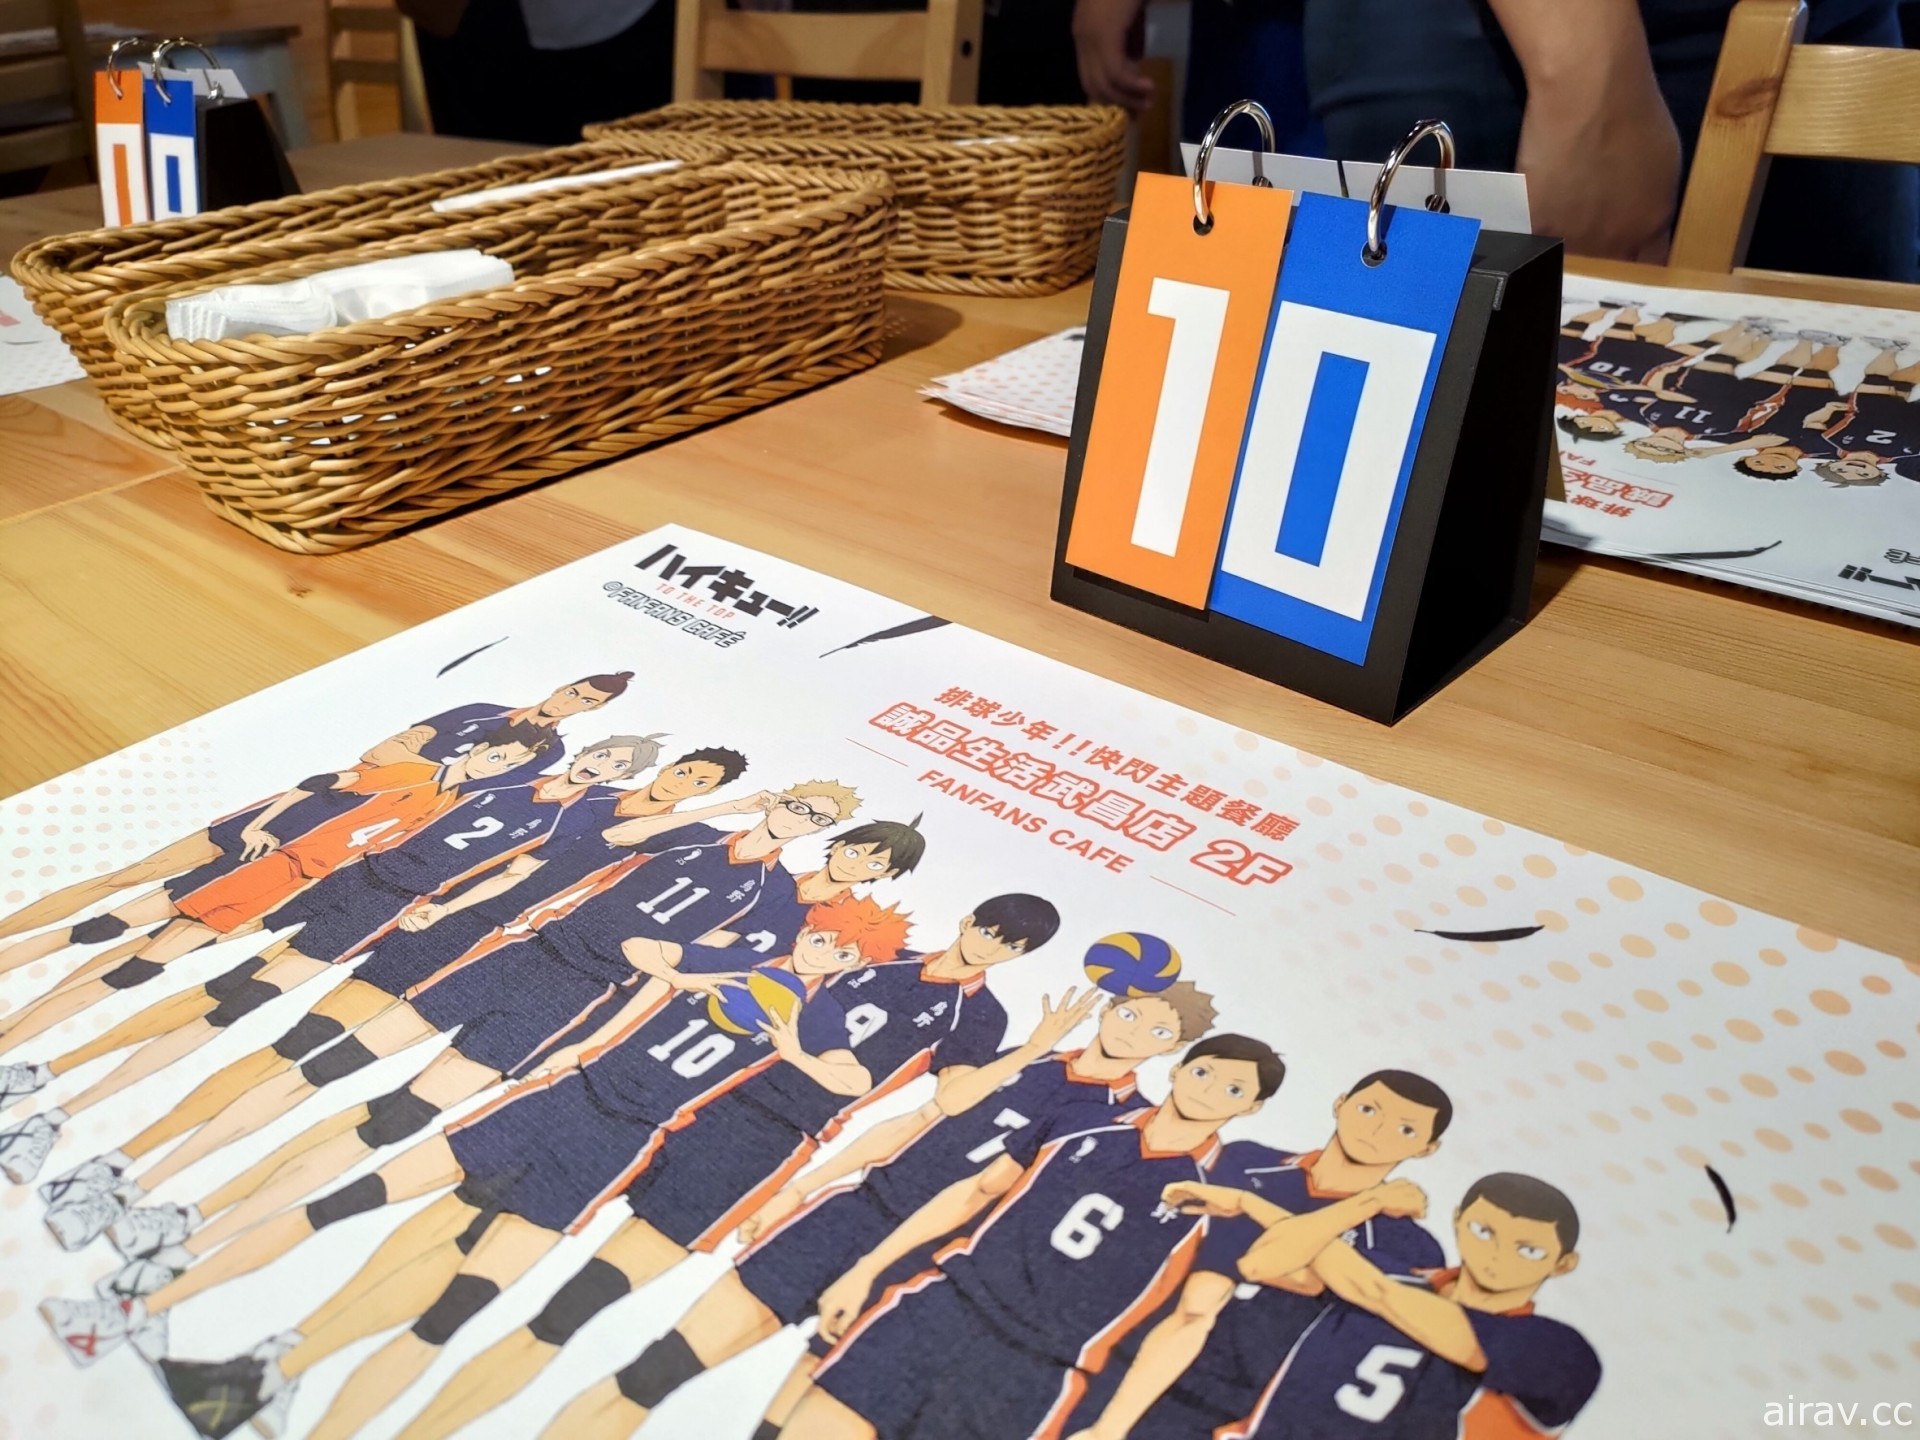 《排球少年！！》主題快閃咖啡廳於西門町誠品生活武昌店開幕